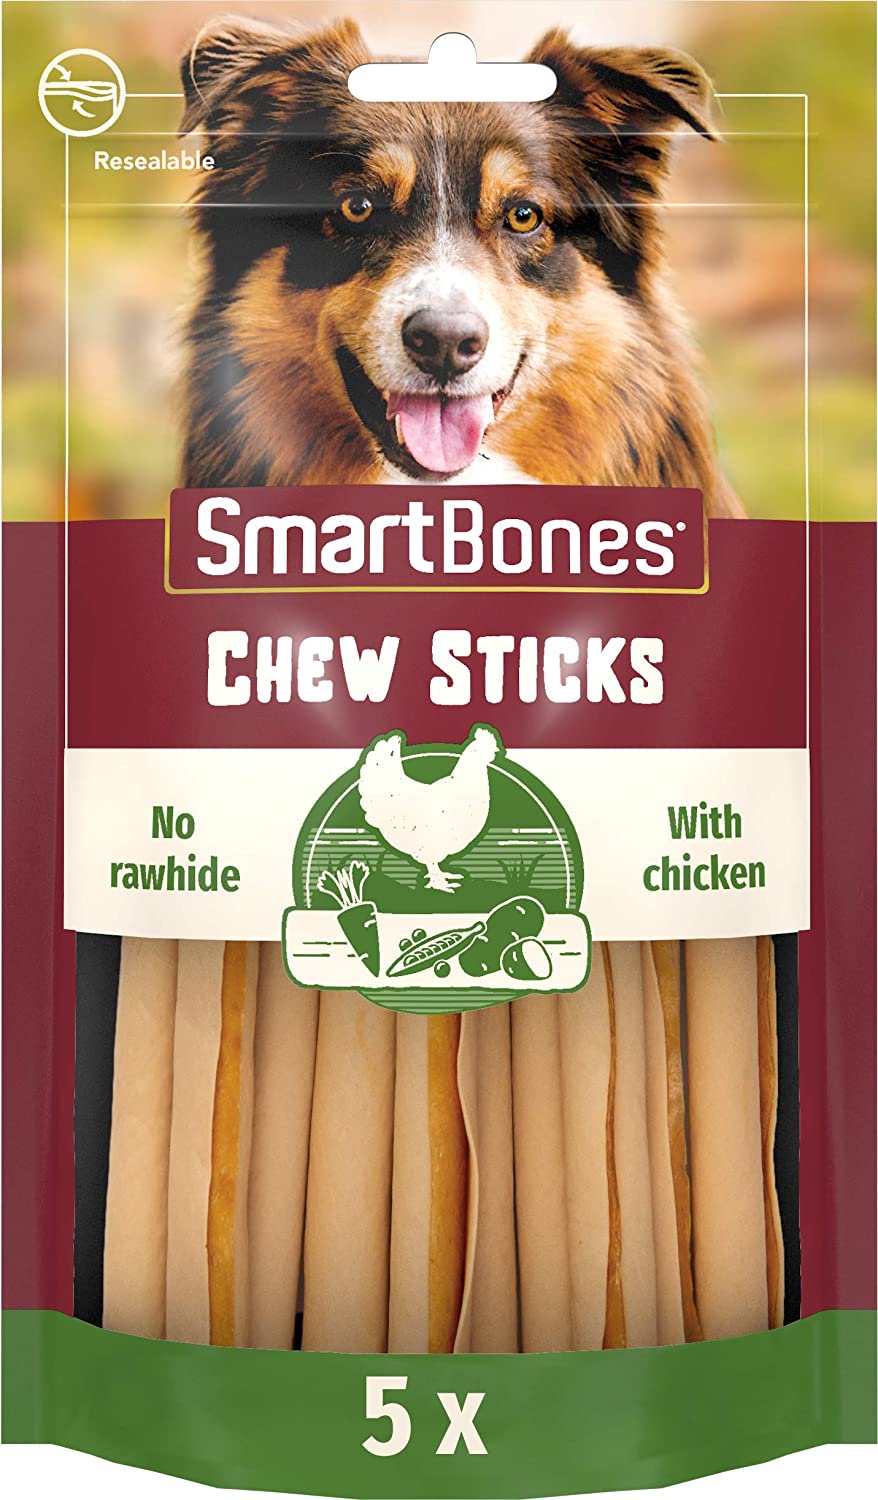 SmartBones - Guloseimas de mastigar para cães,